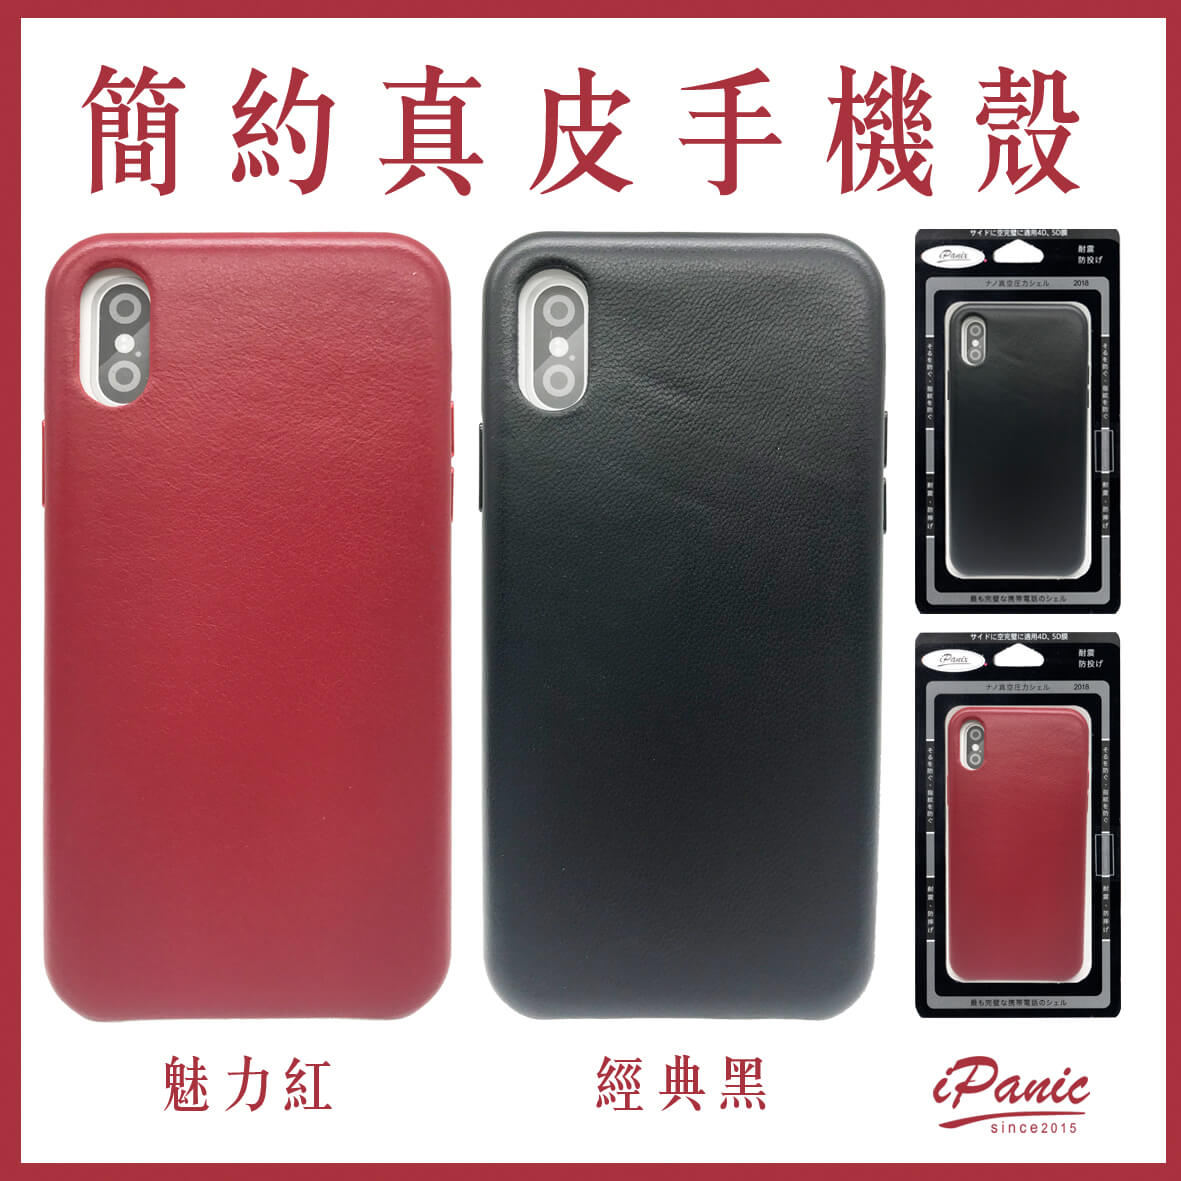 【超取免運】iPhoneX 簡約真皮手機殼 iPanic 皮革手機殼 質感 皮革 真皮 手機殼 iphone 手工 羊皮